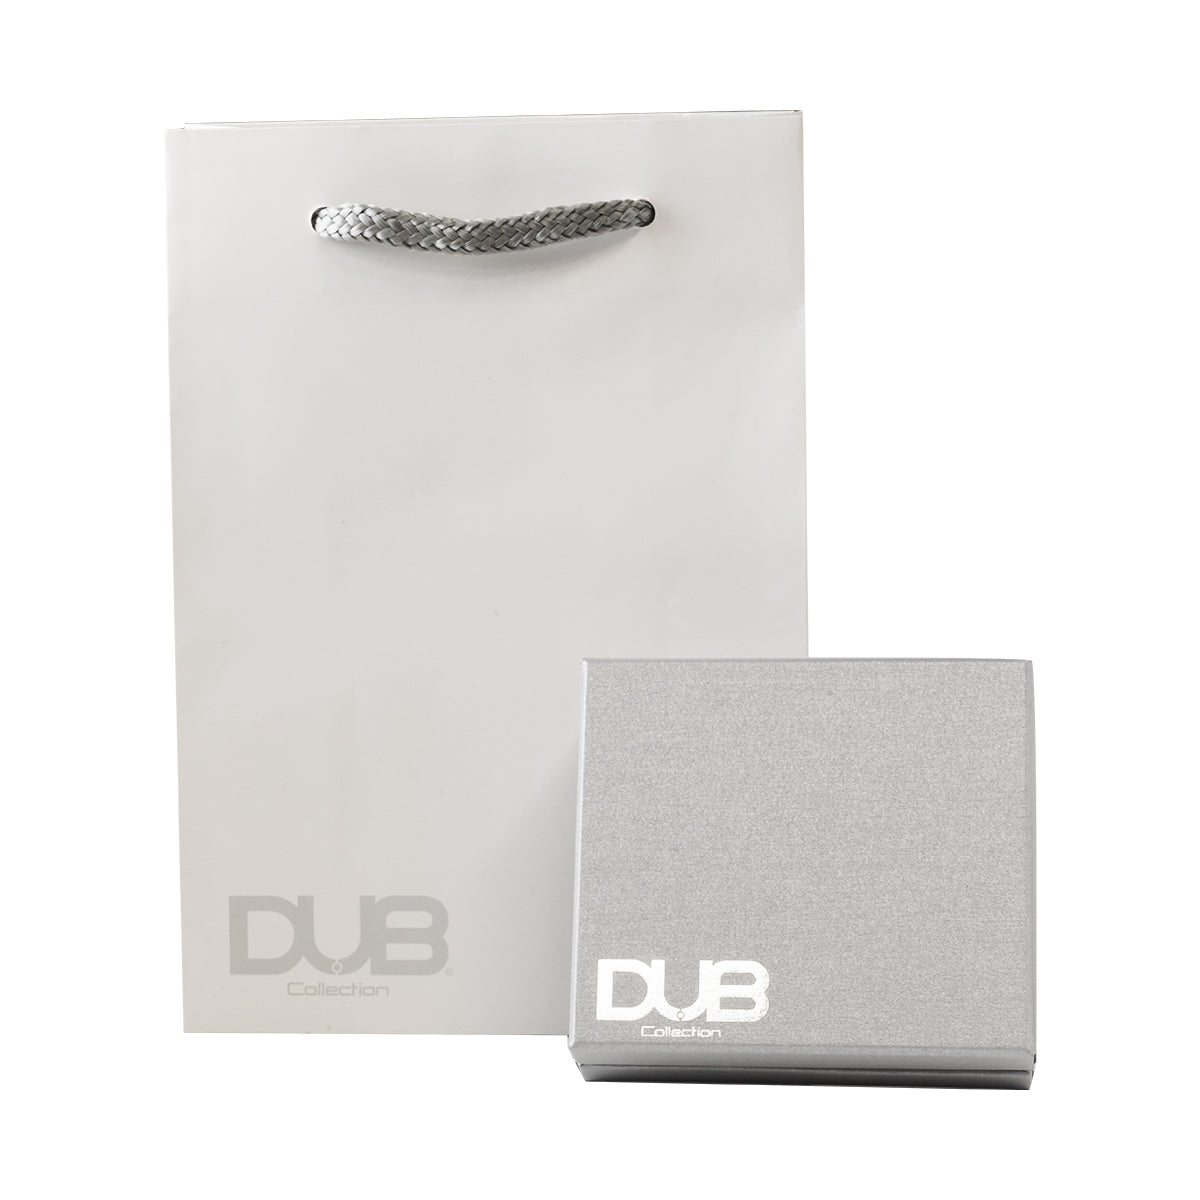 DUBj-180-2 Side Emblem Stone Necklace -white-